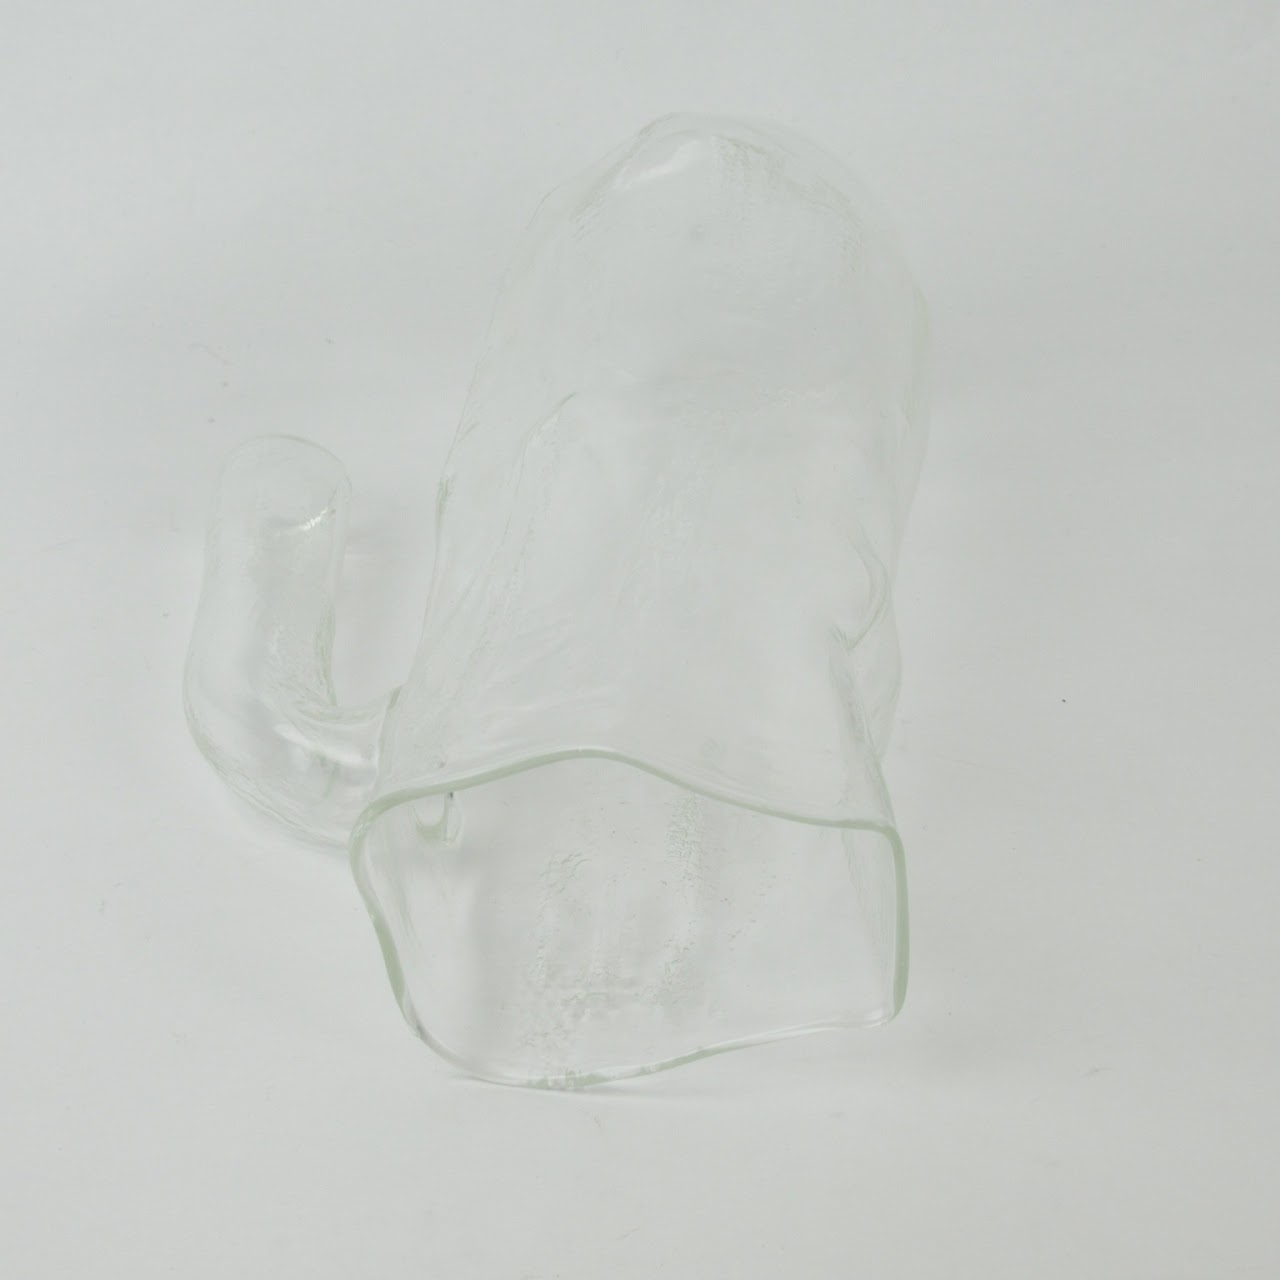 Sculptural Textured Glass Pitcher